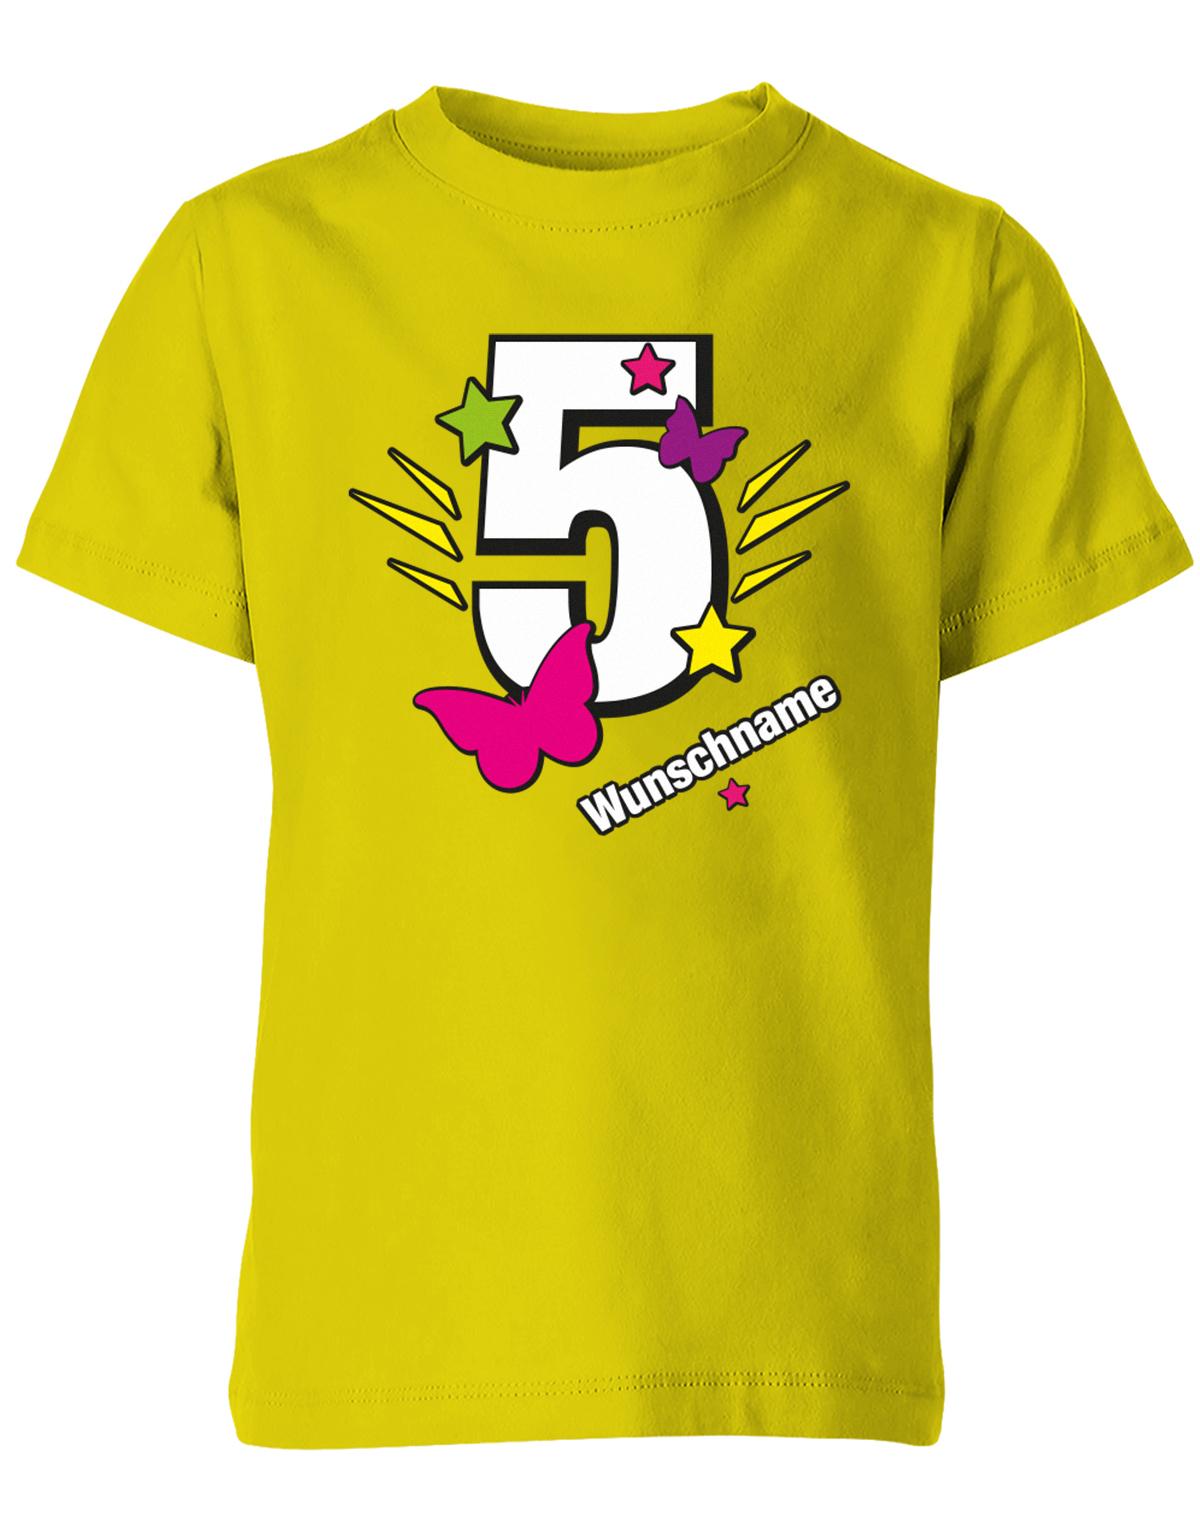 schmetterling-sterne-5-geburtstag-wunschname-kinder-shirt-gelb